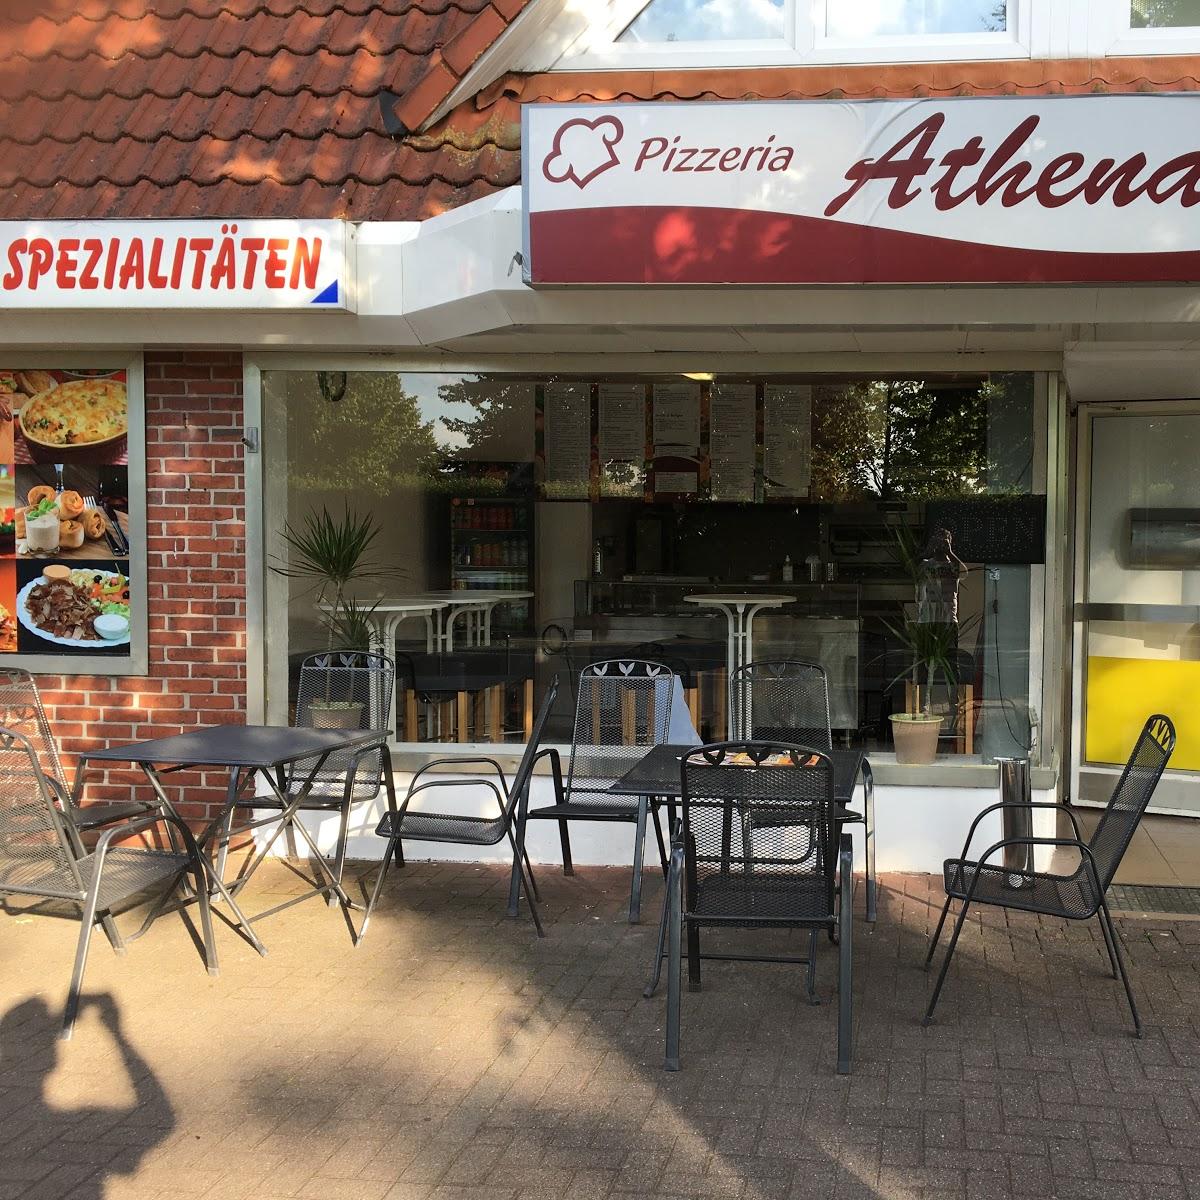 Restaurant "Athena pizzeria" in Bad Zwischenahn